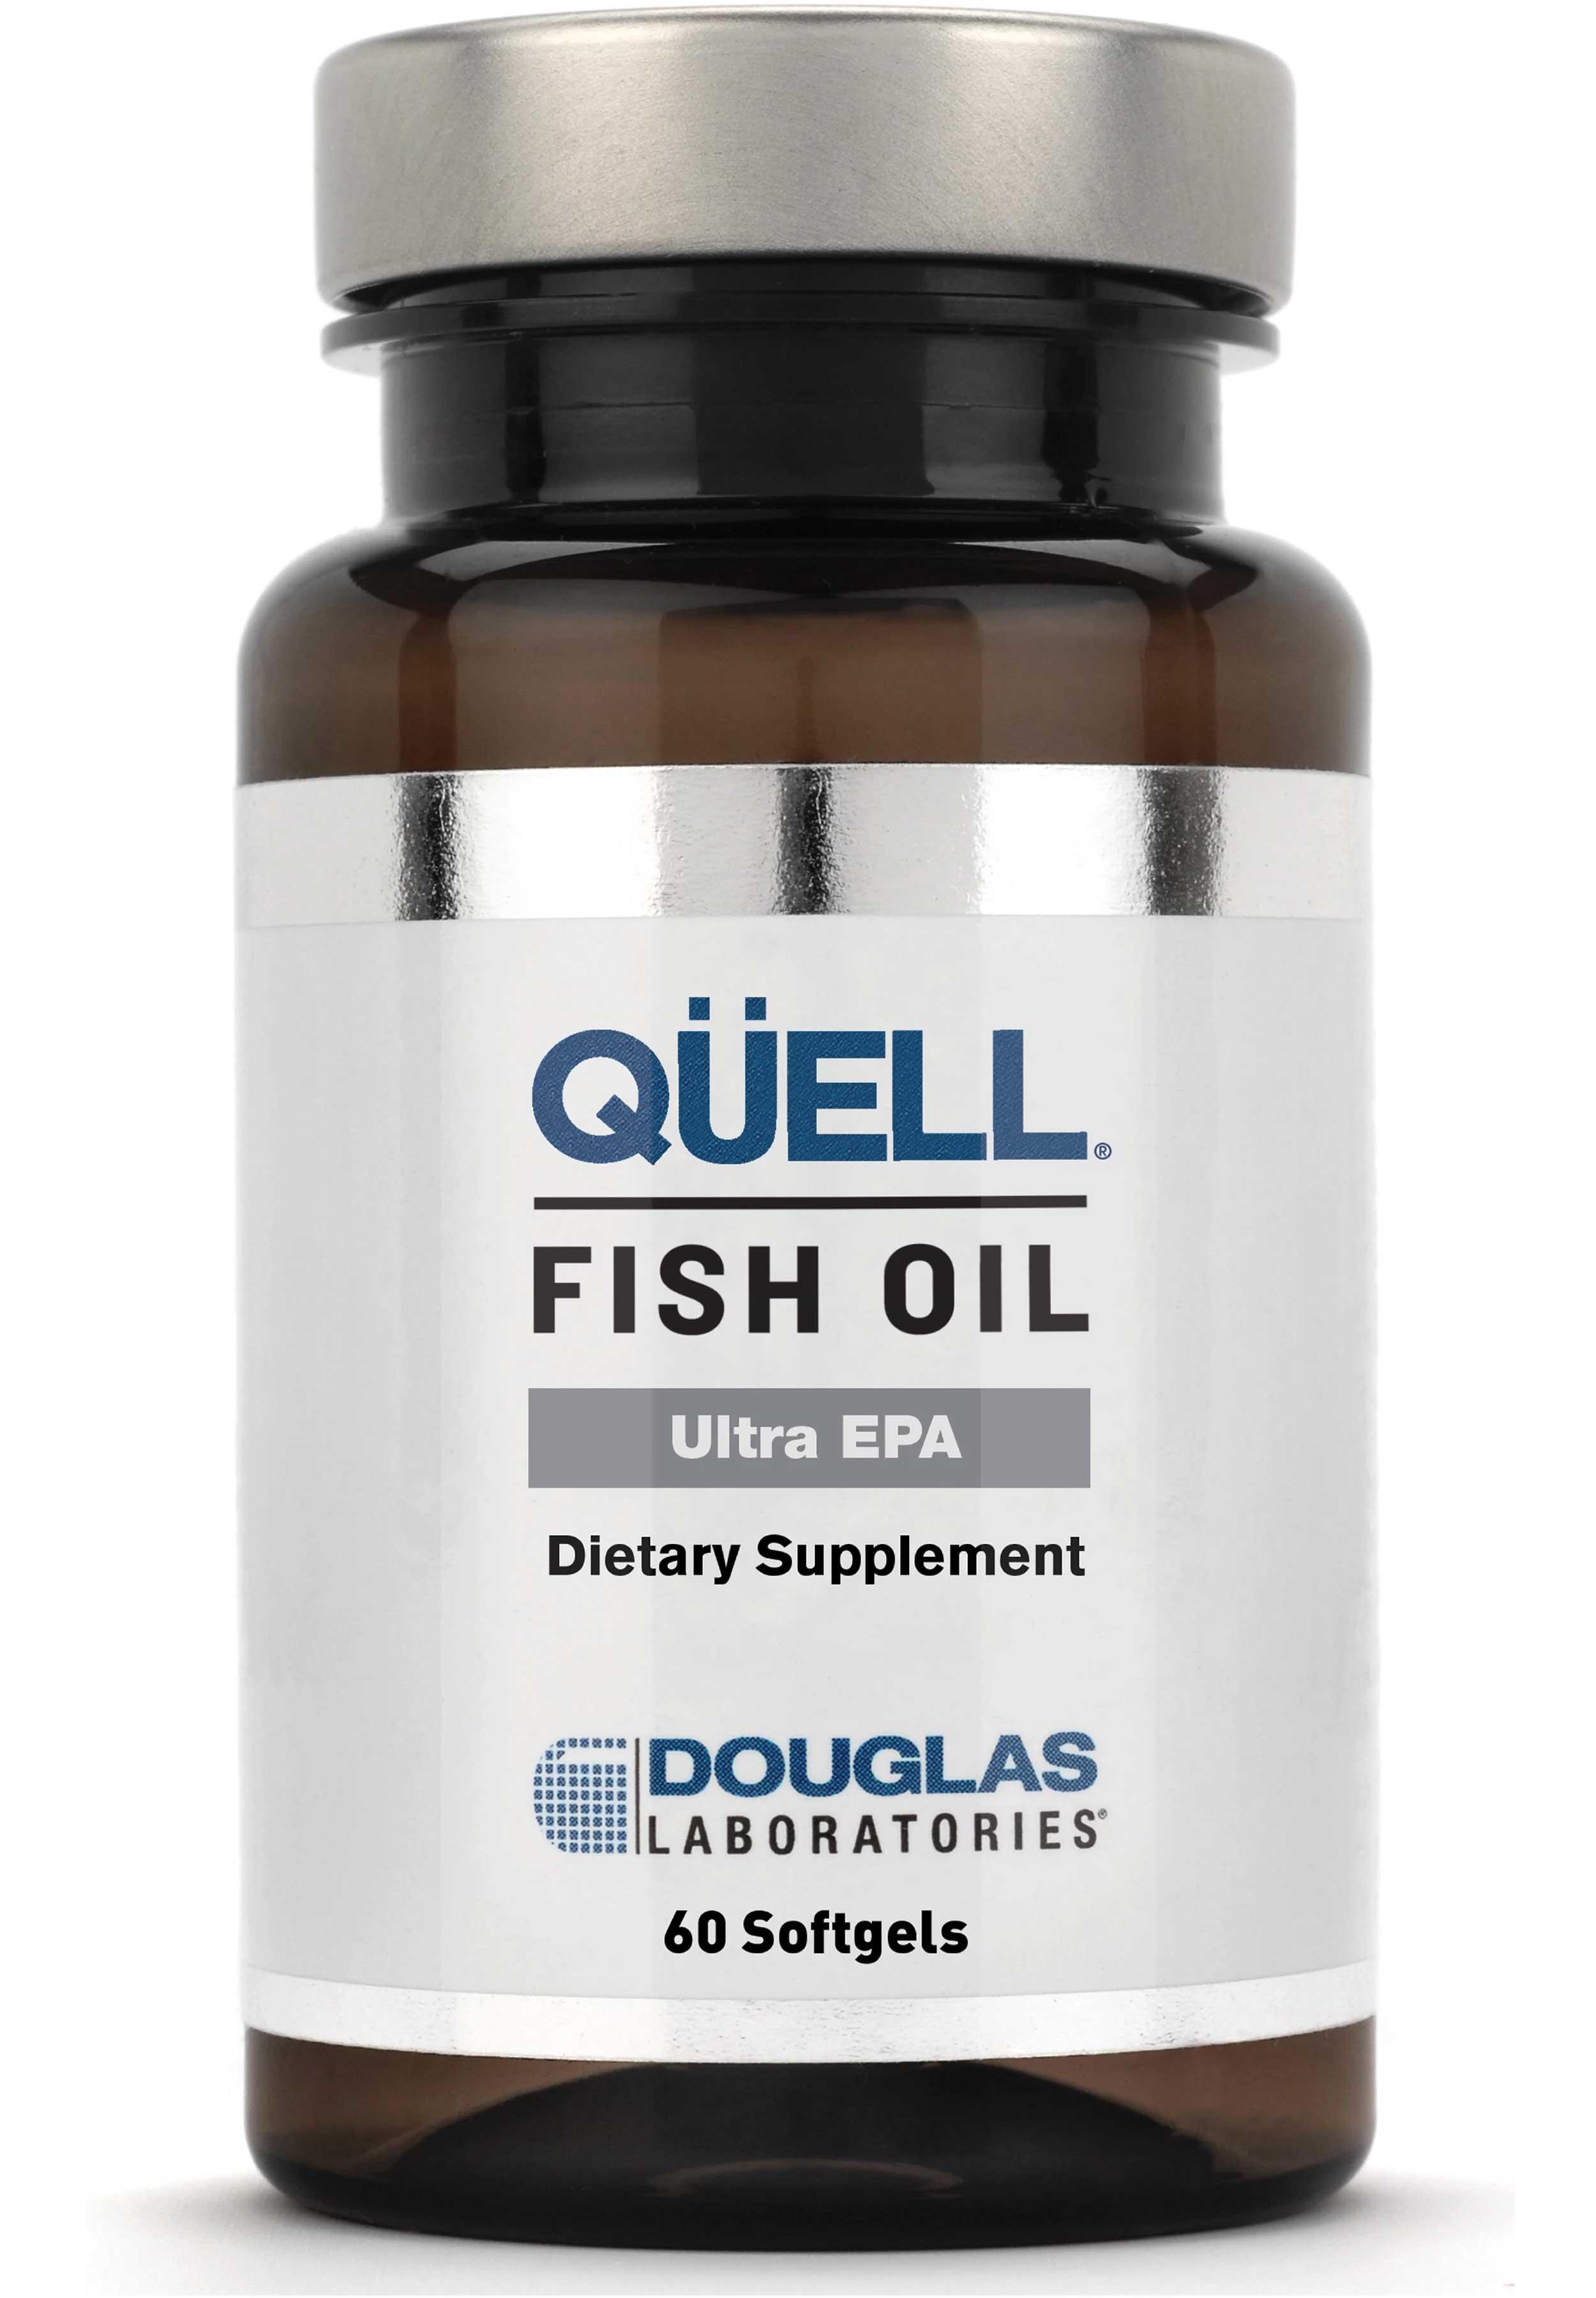 Douglas Laboratories QUELL Fish Oil - Ultra EPA